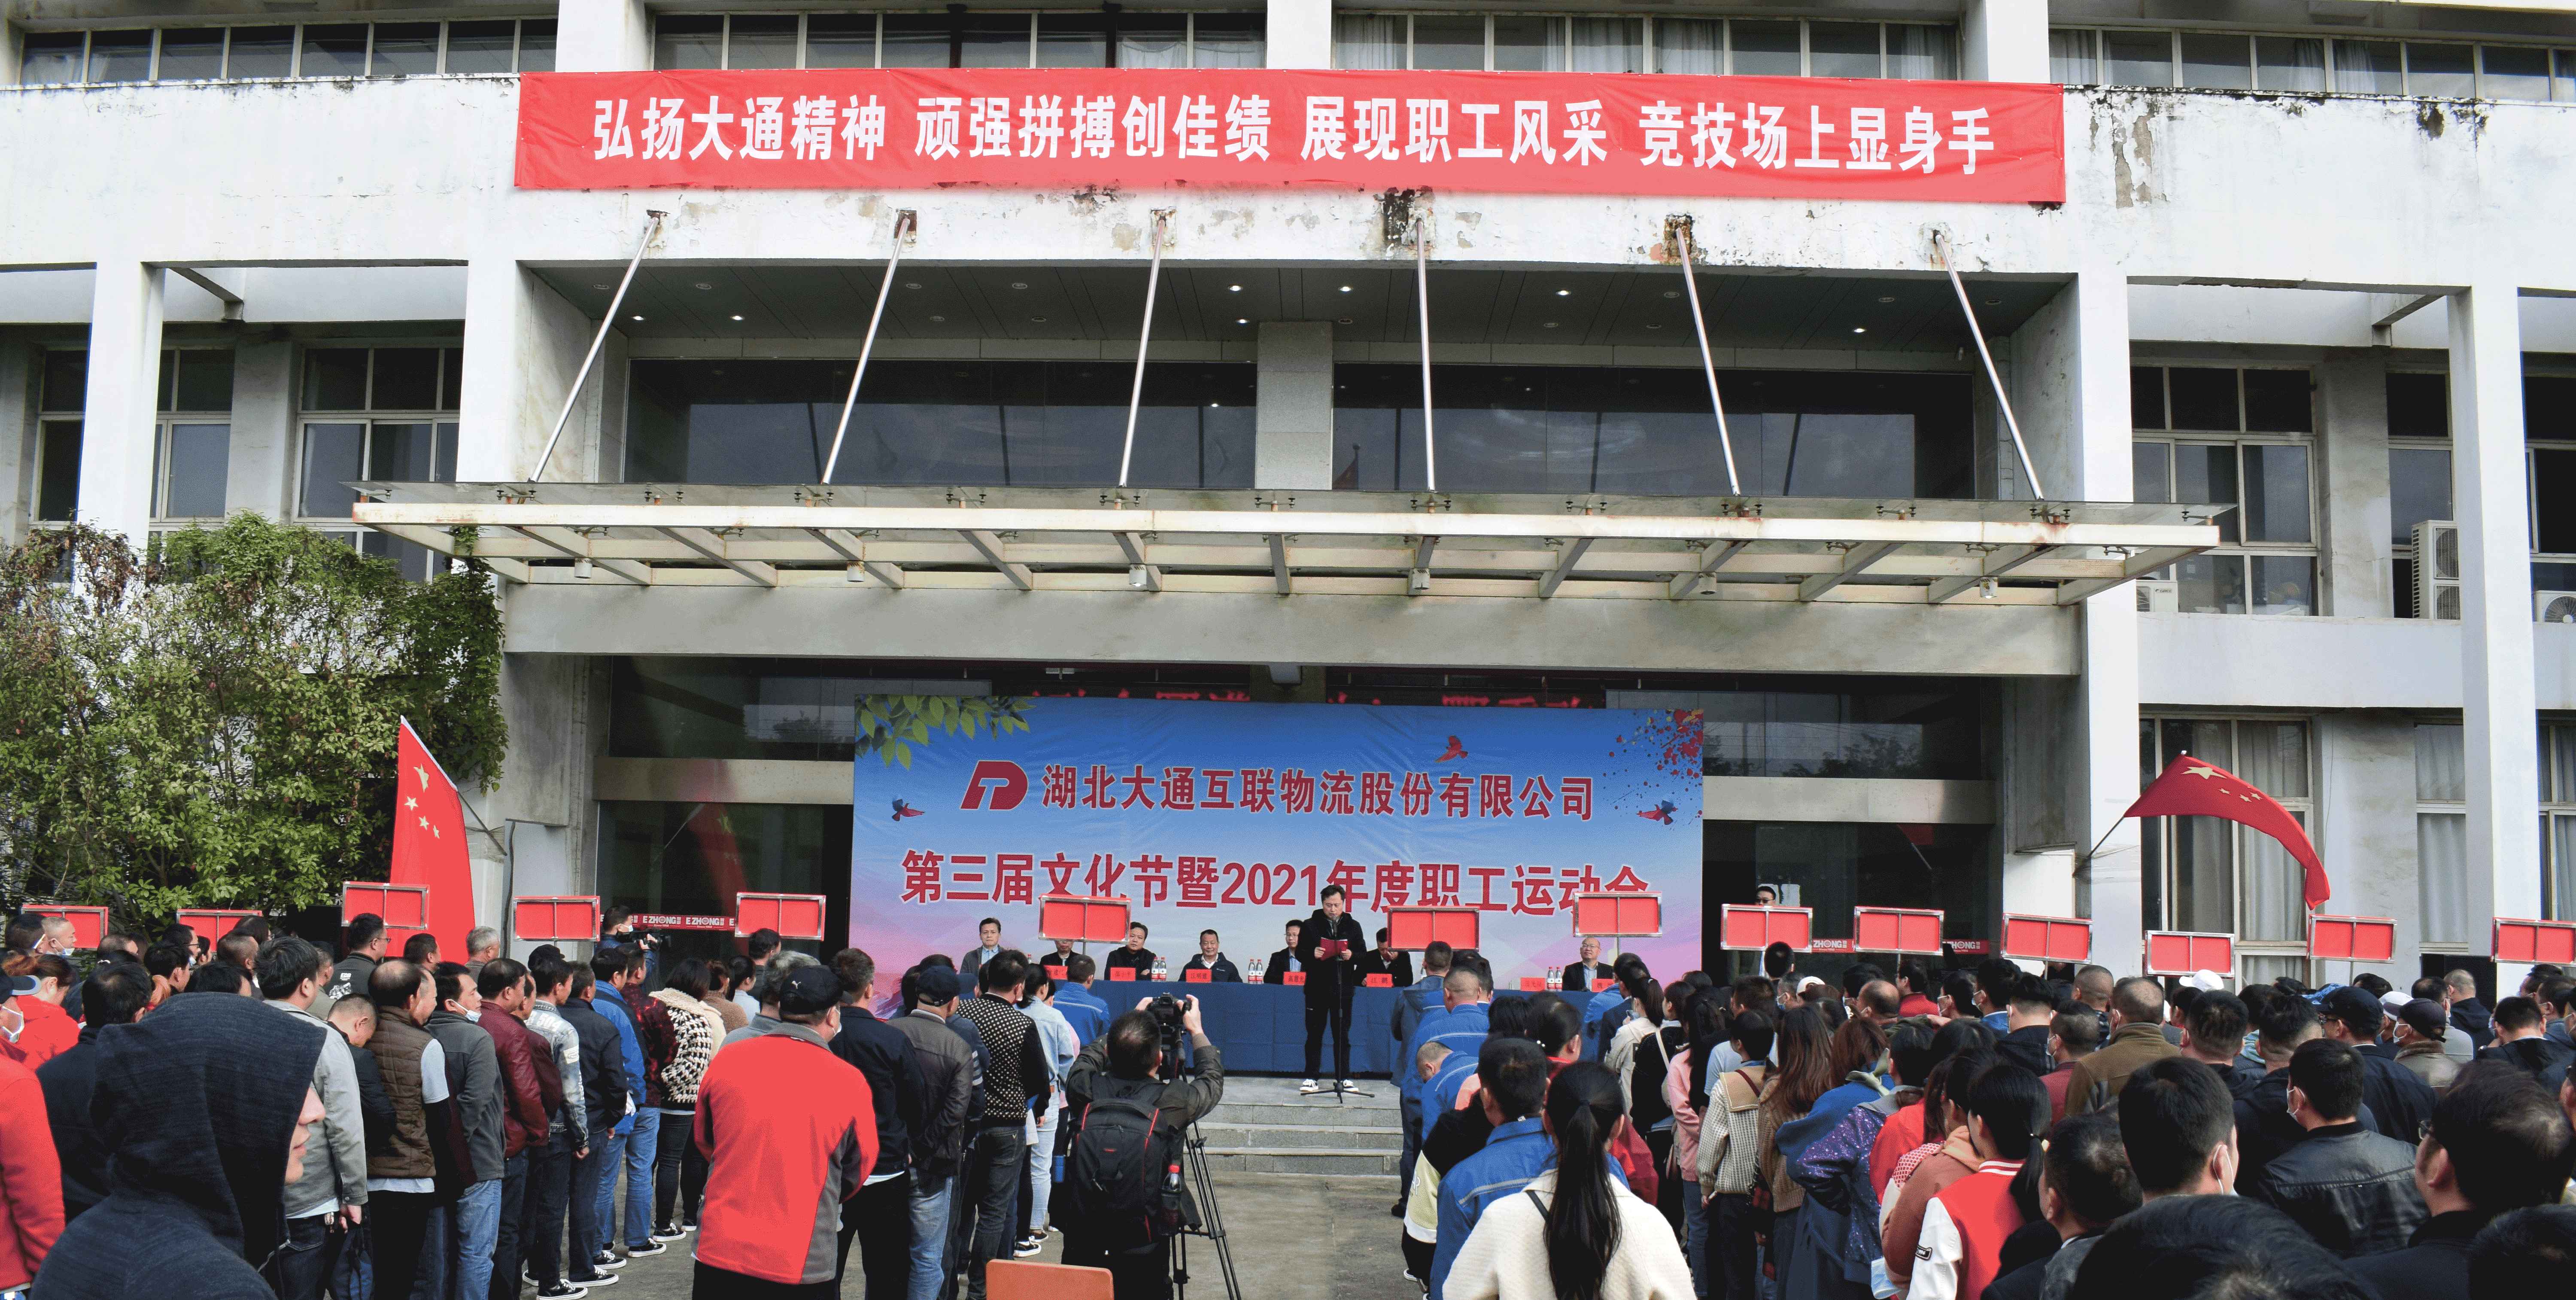 大通公司举办第三届大通文化节职工运动会